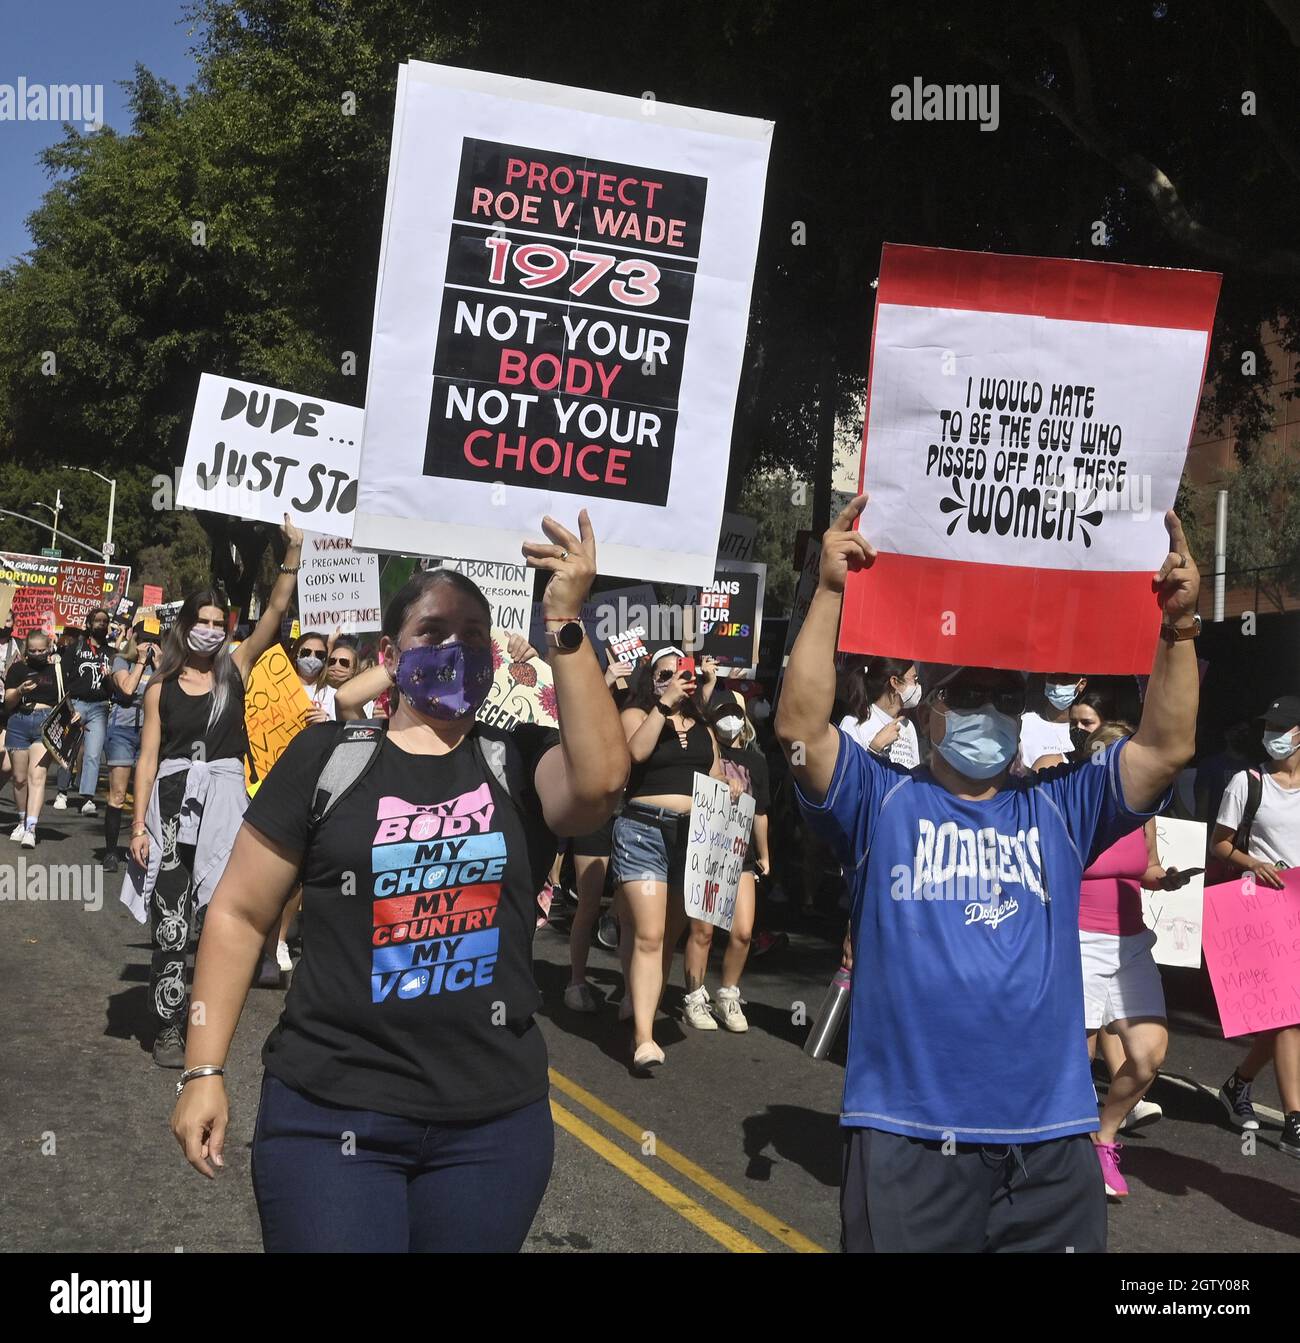 Los Angeles, États-Unis. 02 octobre 2021. Aujourd'hui, des milliers de personnes s'emlancent dans les rues du centre-ville de Los Angeles et d'autres endroits autour du sud pour soutenir les droits en matière de reproduction, dans le cadre d'une série nationale de manifestations contre l'interdiction quasi totale de l'avortement au Texas, le samedi 1er octobre 2021. La Women's March Foundation a tenu sa marche officielle à Washington, DC, avec plus de 600 « marches sinistres » planifiées à l'échelle nationale. Photo de Jim Ruymen/UPI crédit: UPI/Alay Live News Banque D'Images